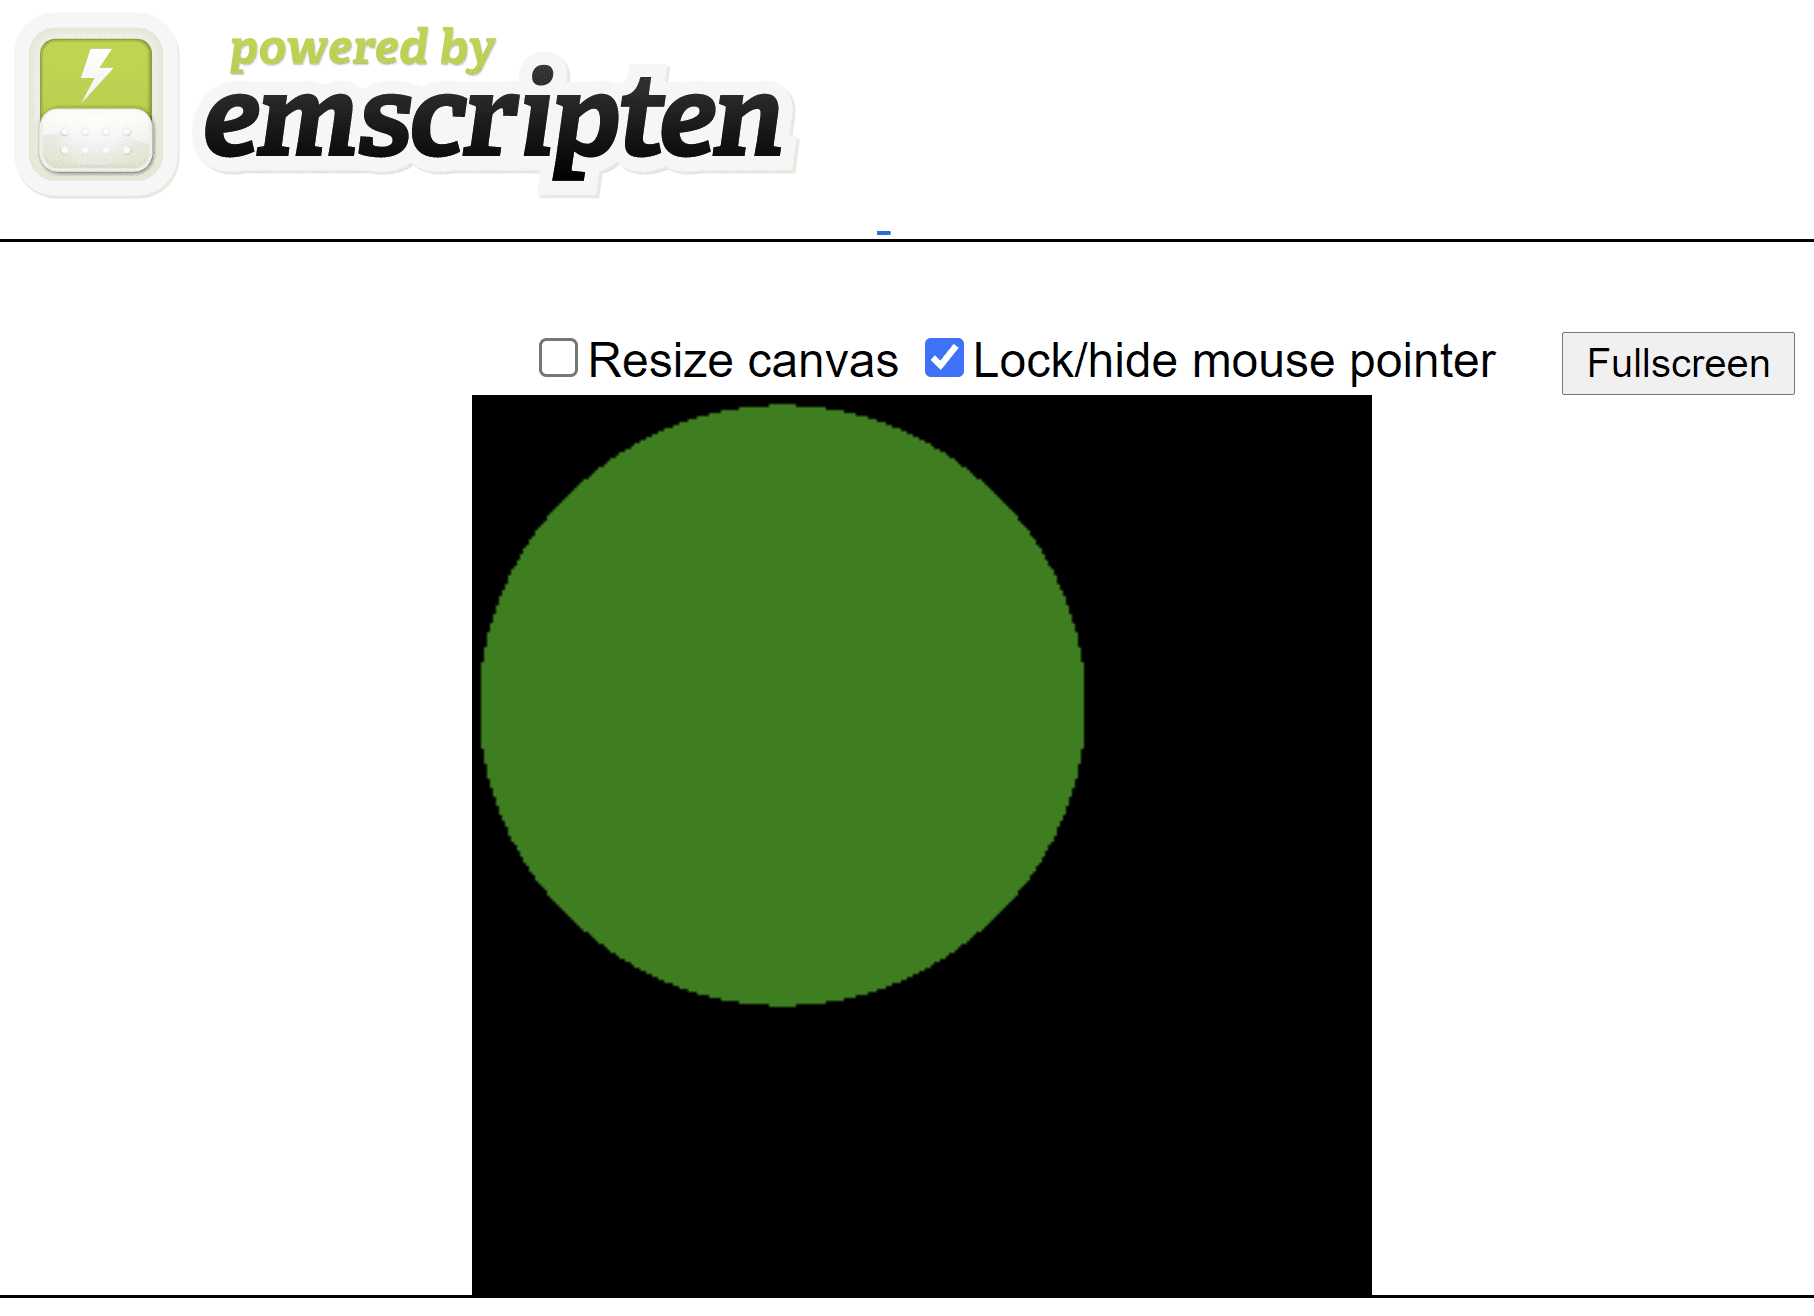 صفحه HTML ایجاد شده توسط Emscripten که یک دایره سبز رنگ را روی بوم مربع سیاه نشان می دهد.